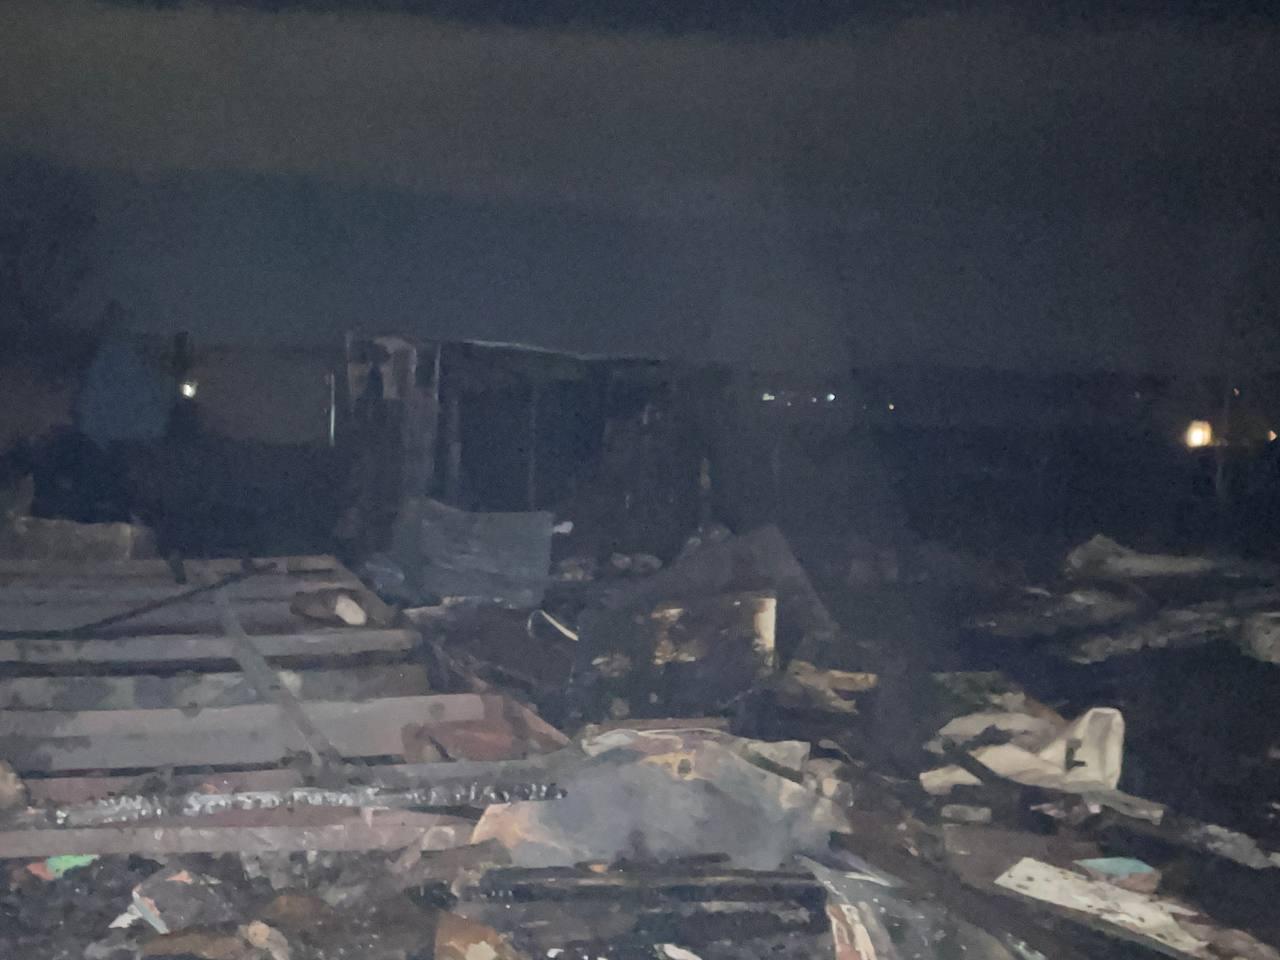 Крупный пожар произошел в пригороде Читы - сгорел жилой дом